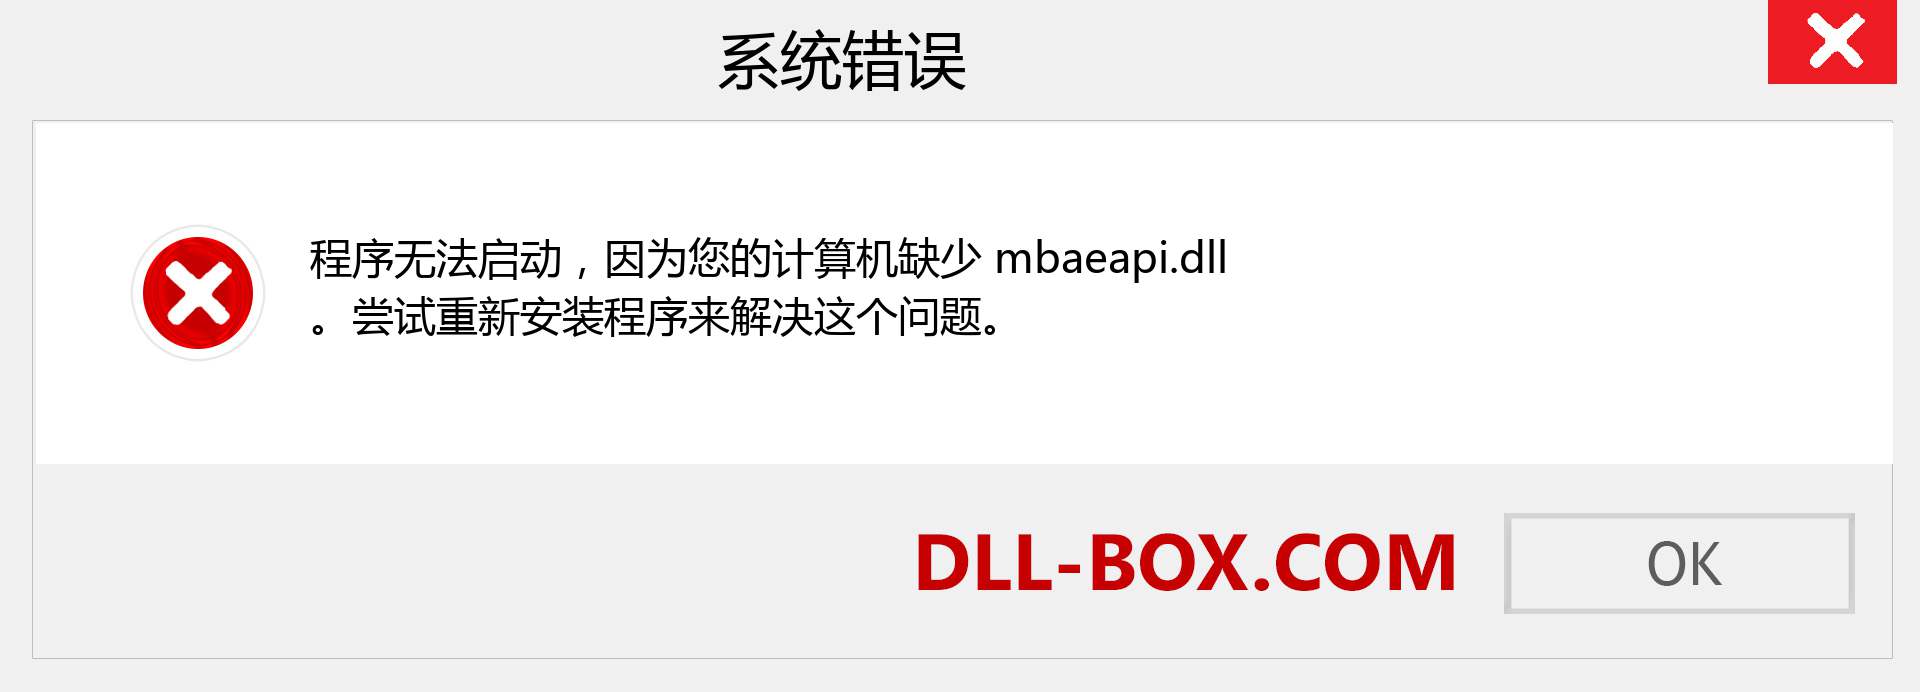 mbaeapi.dll 文件丢失？。 适用于 Windows 7、8、10 的下载 - 修复 Windows、照片、图像上的 mbaeapi dll 丢失错误